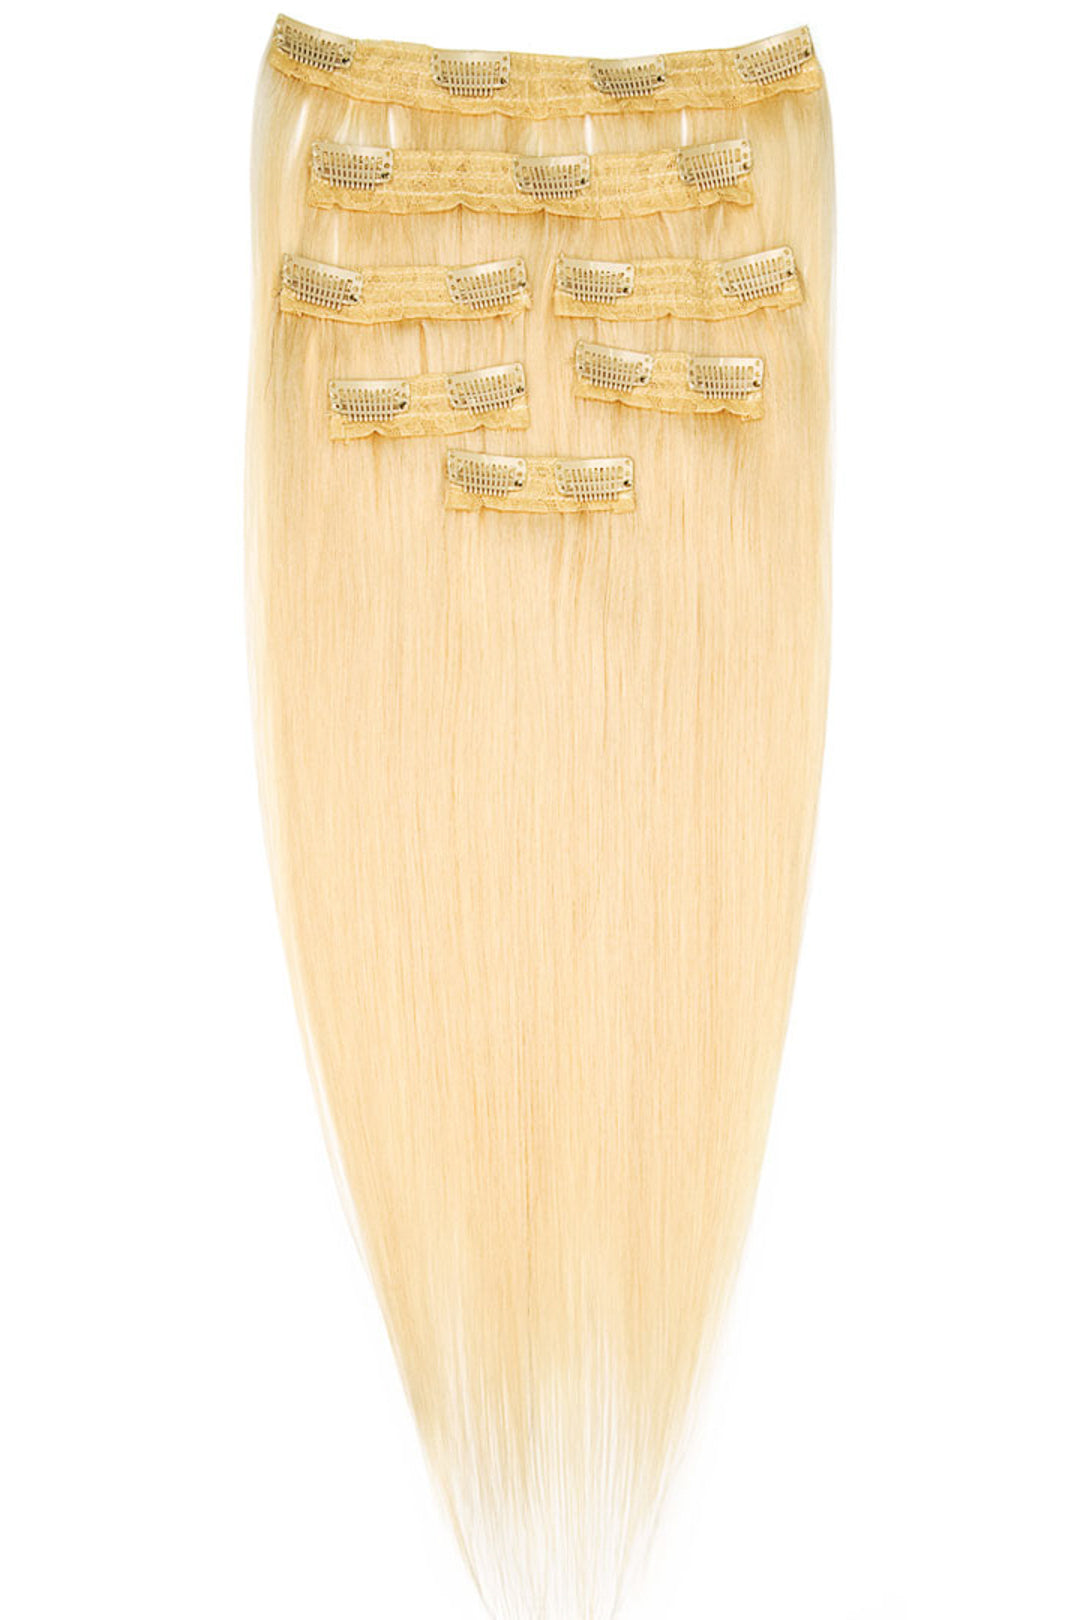 AVERA #613 Platinum Blonde Clip-In Hair Extension